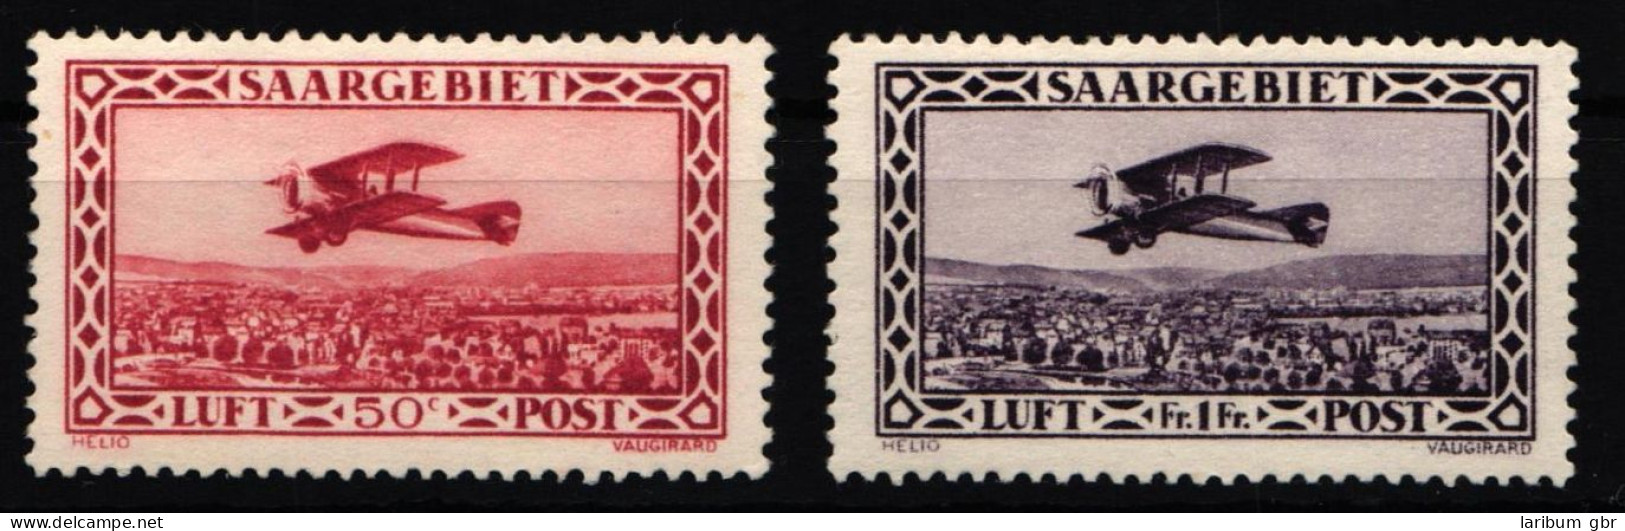 Saargebiet 126-127 Postfrisch #NL358 - Klaipeda 1923